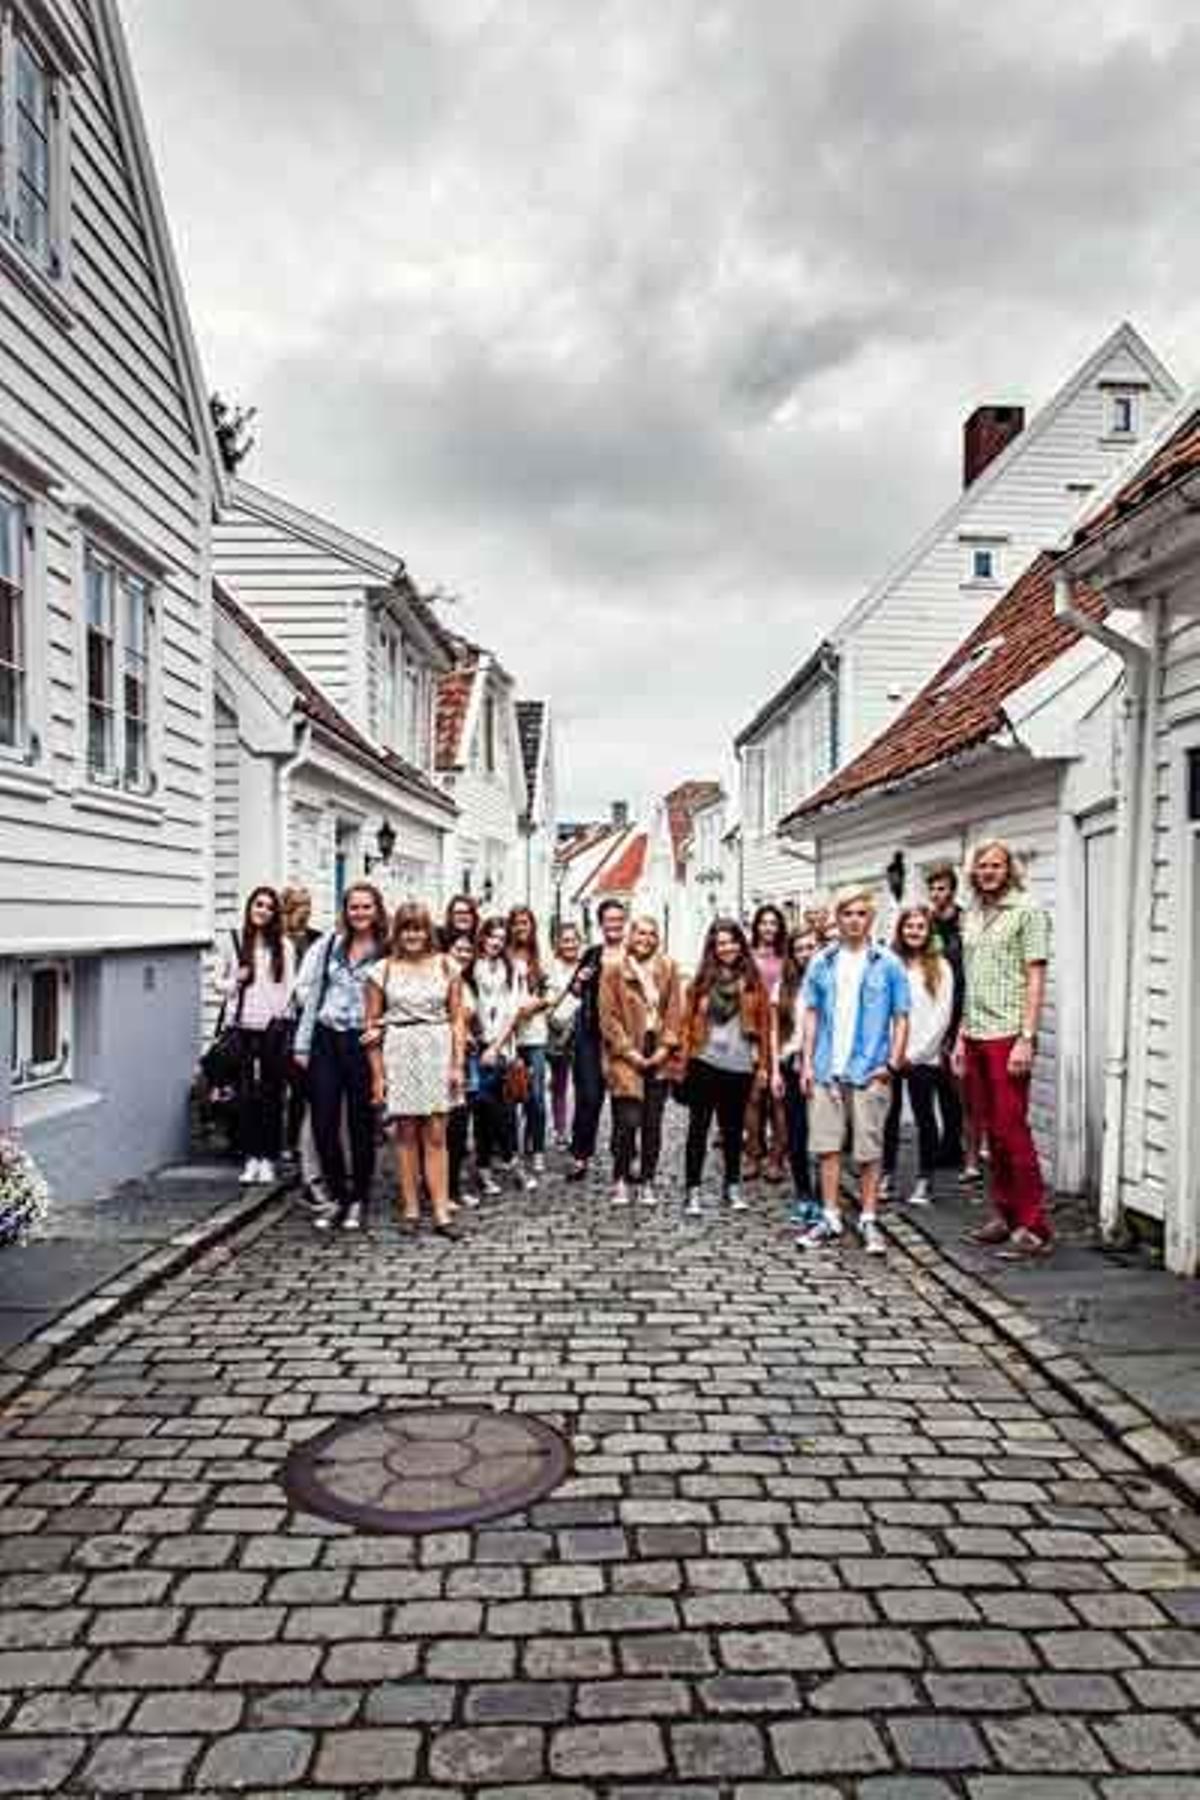 El centro histórico de Stavanger exhibe 173 casas de madera que fueron construidas a finales del siglo XVIII y principios del XIX.